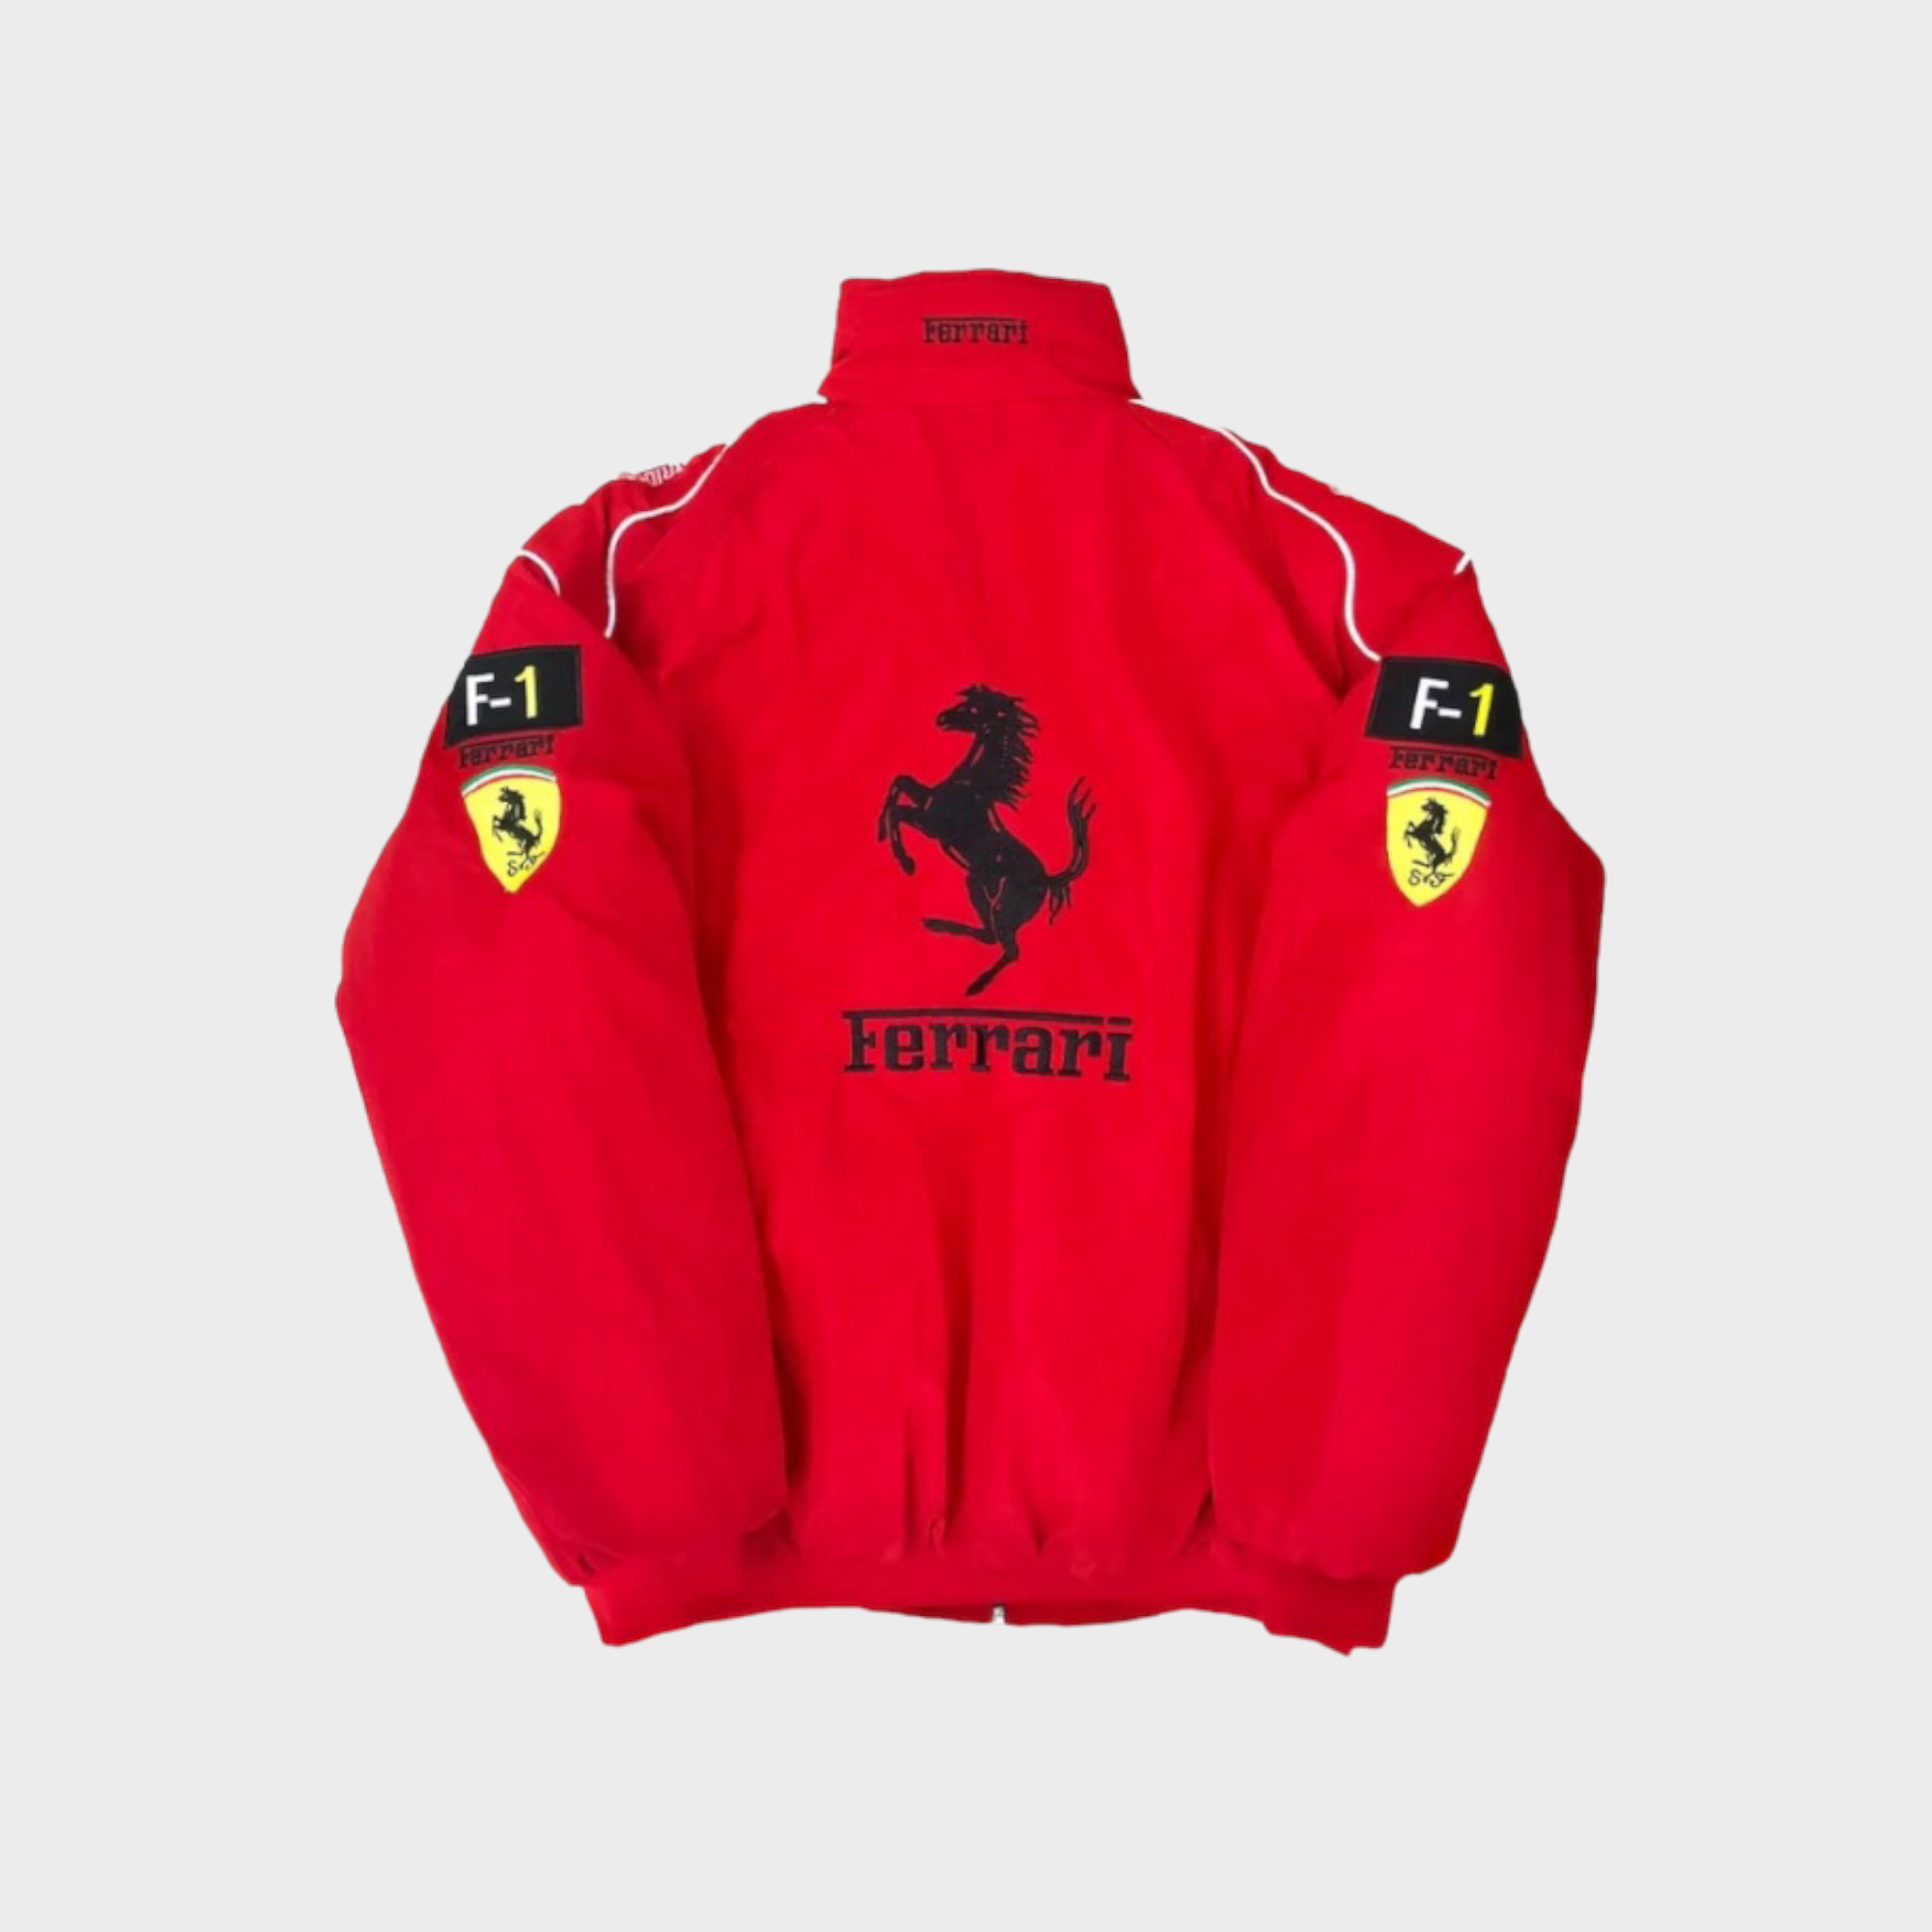 (NUR HEUTE MIT FAST 70% RABATT!) Rote Ferrari Jacke